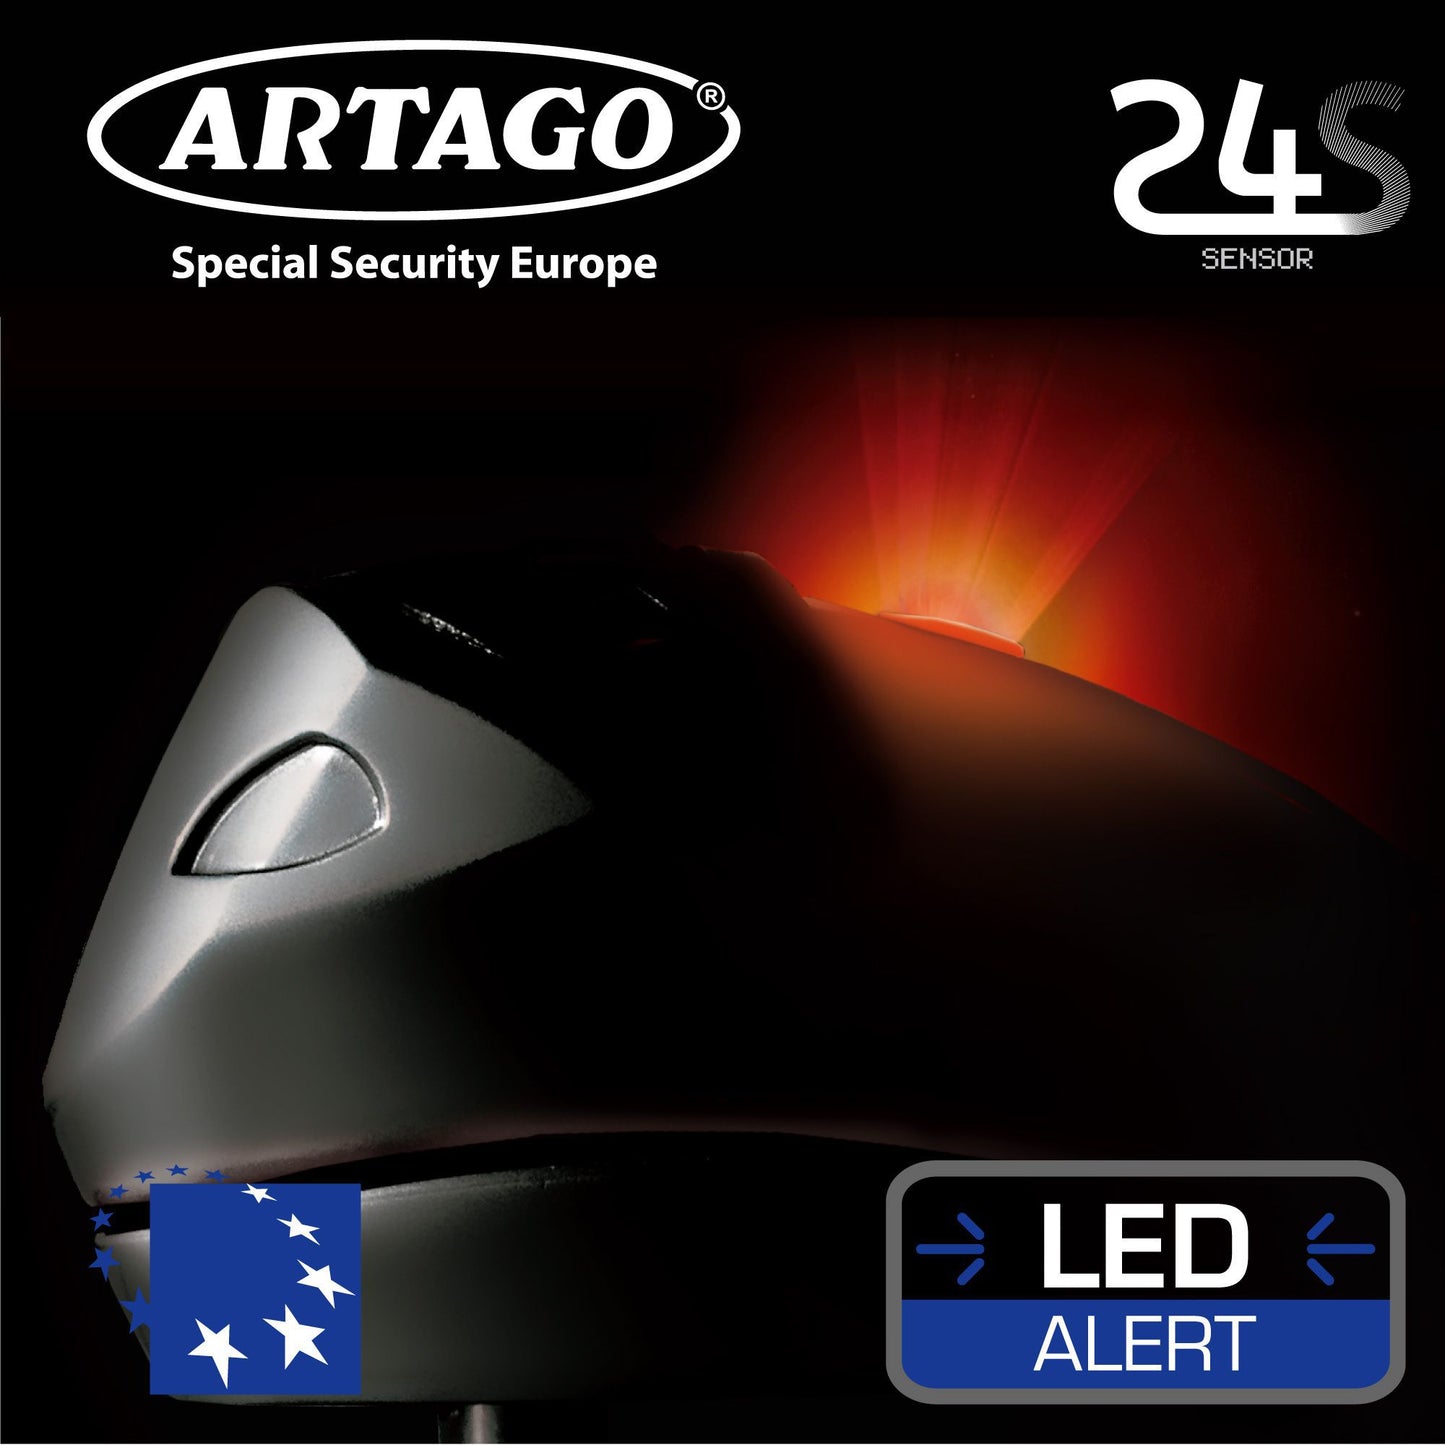 Antirrobo Alarma Disco Moto Artago 24S - URA Moto